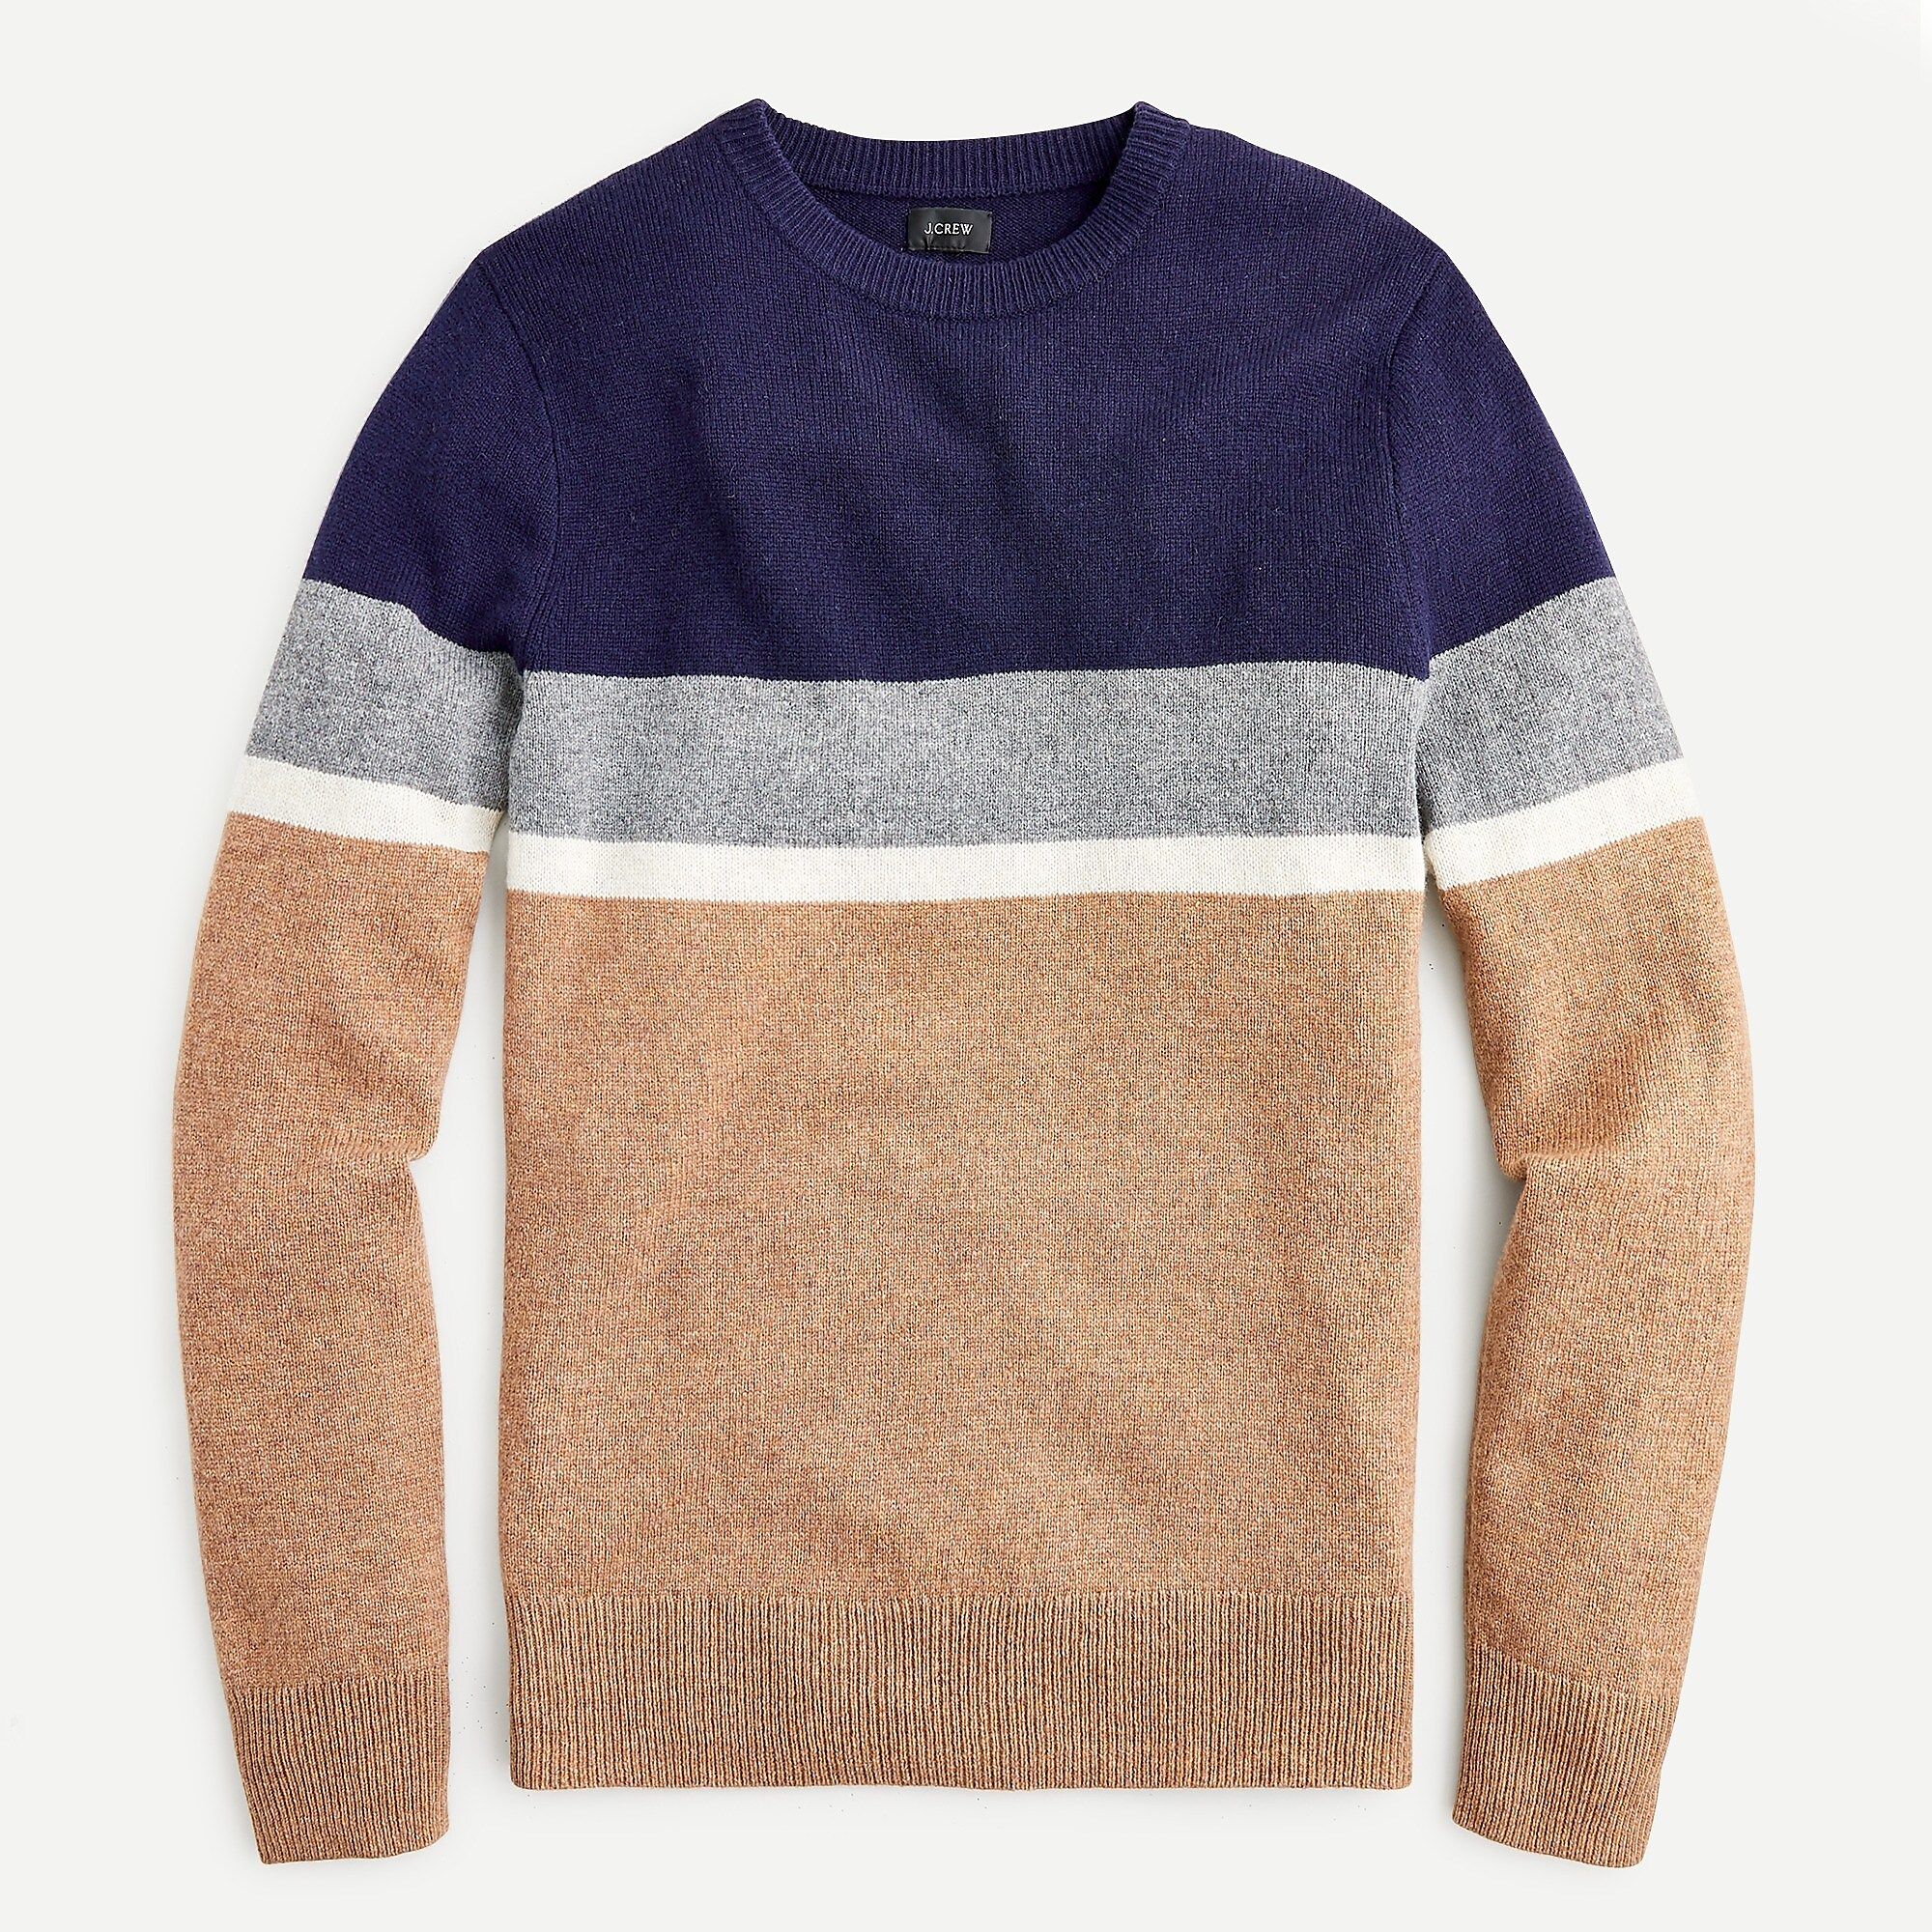 Rugged merino wool sweater in colorblock | J.Crew US